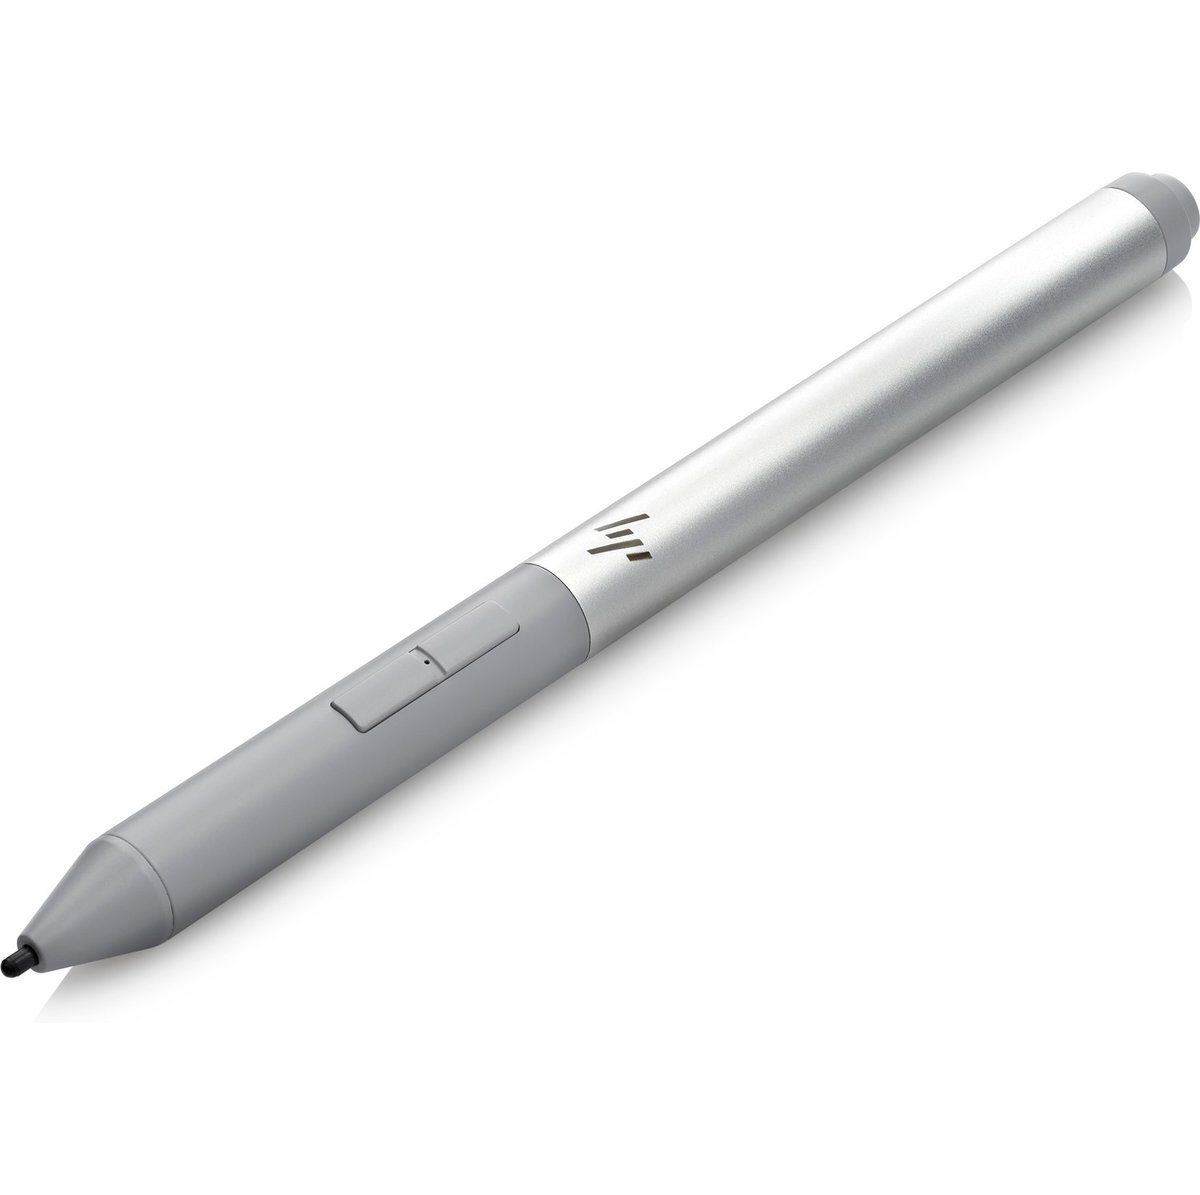 Cyberport online ++ kaufen Tablet-Stift